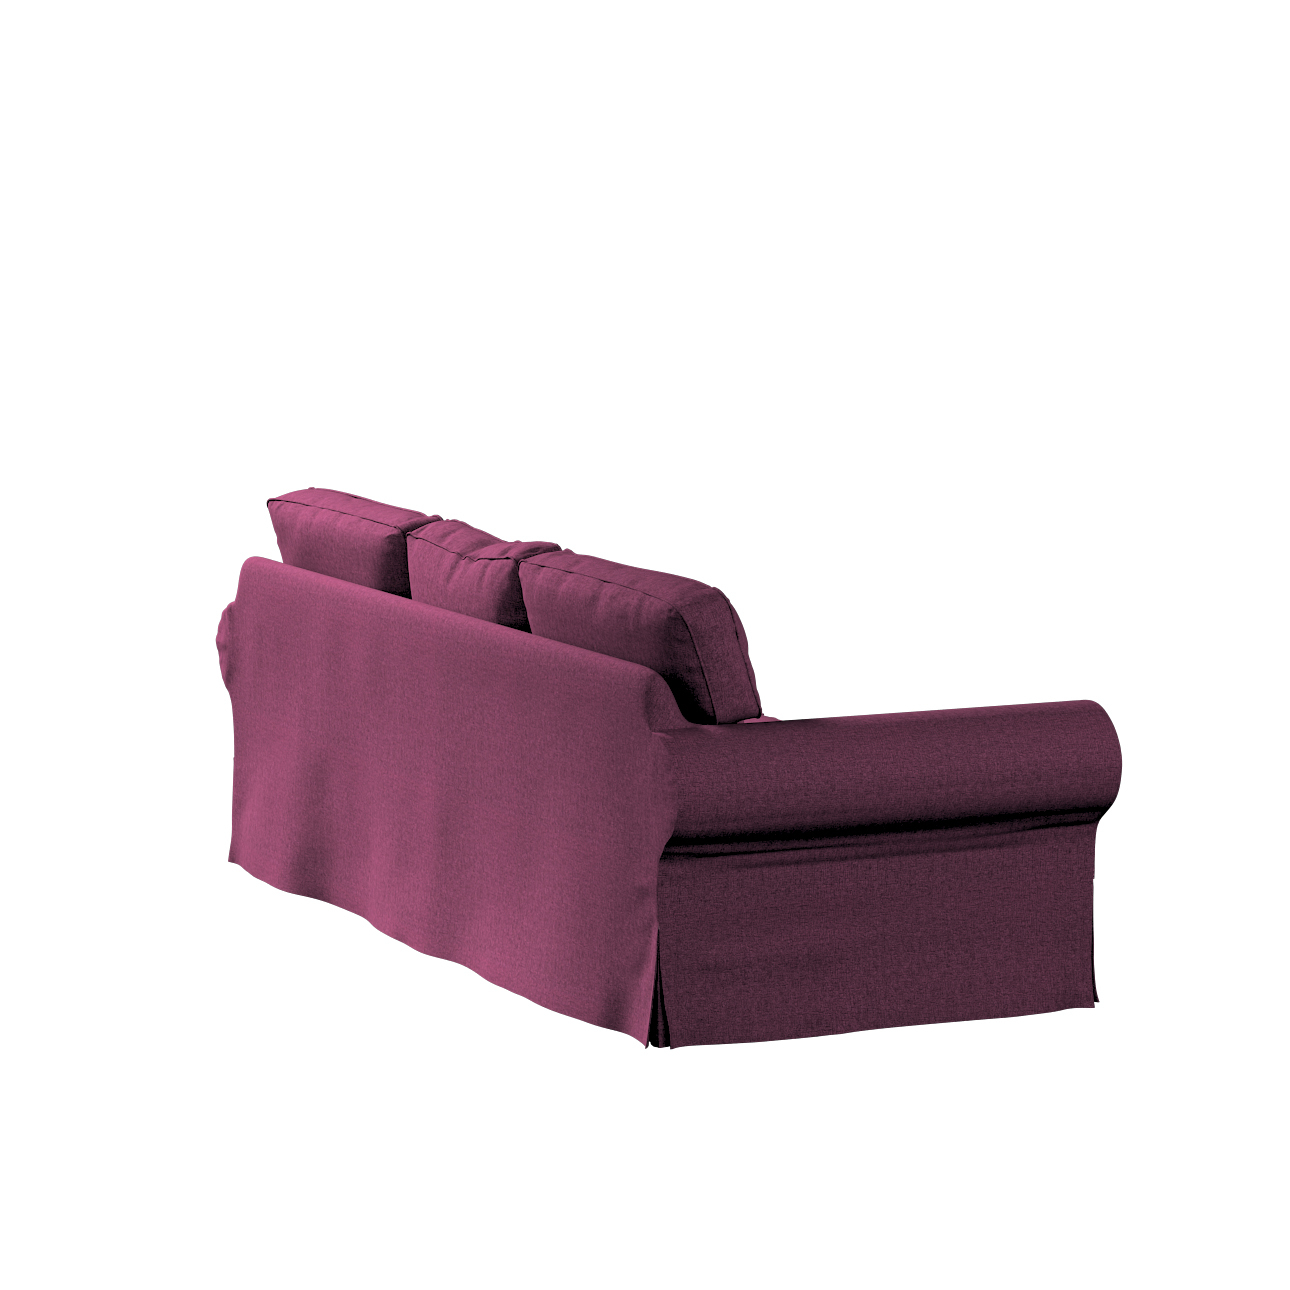 Bezug für Ektorp 3-Sitzer Sofa nicht ausklappbar, pflaumenviolett, Sofabezu günstig online kaufen